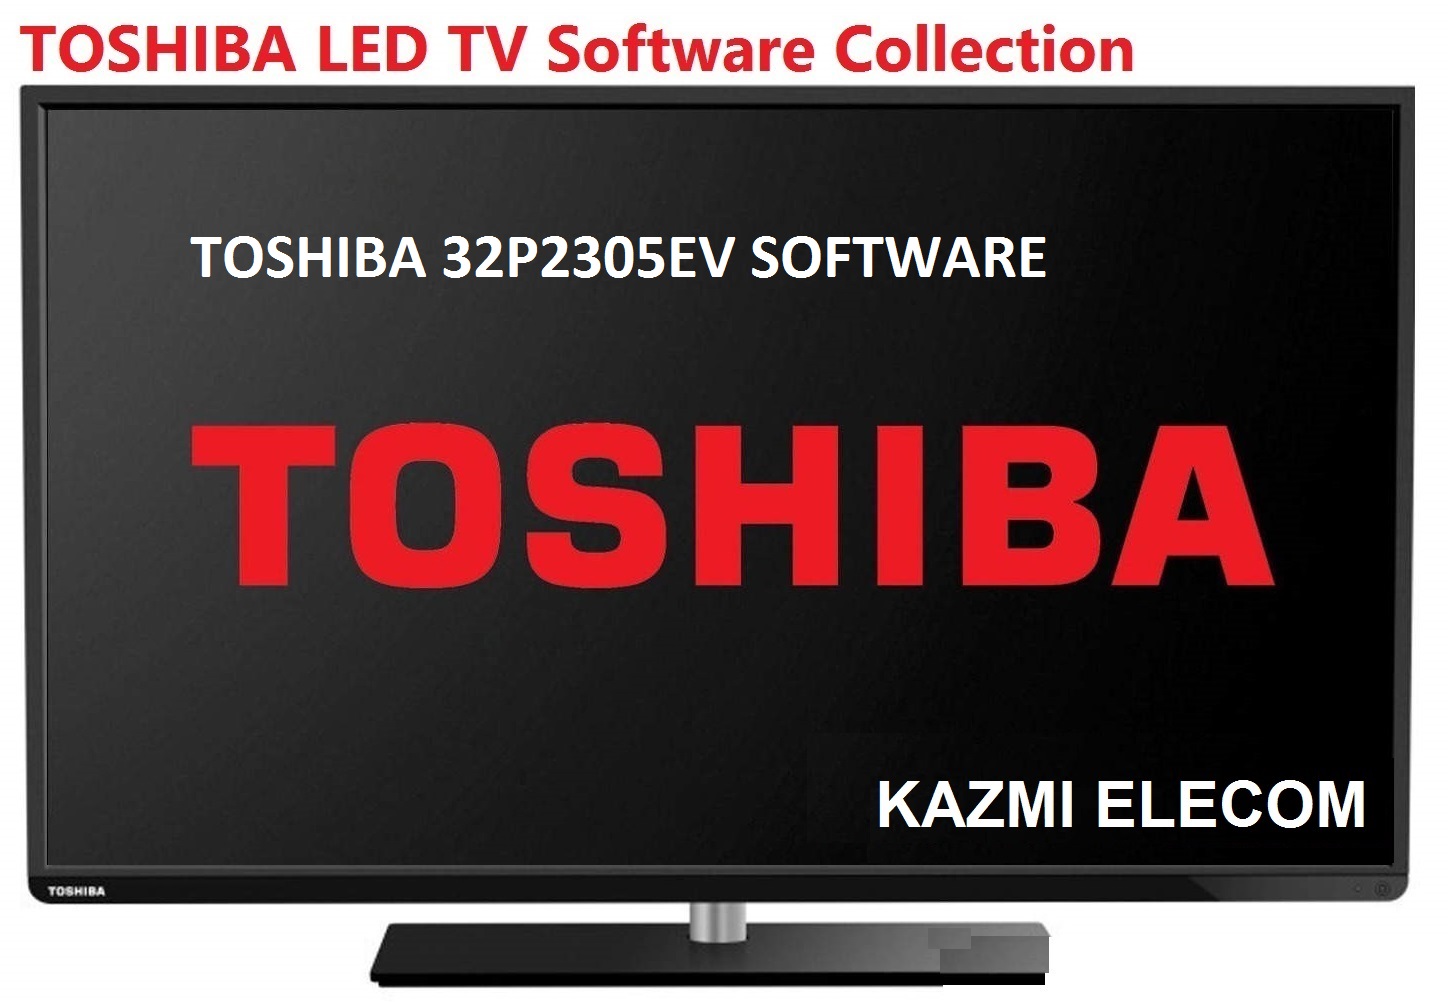 Toshiba 32P2305Ev